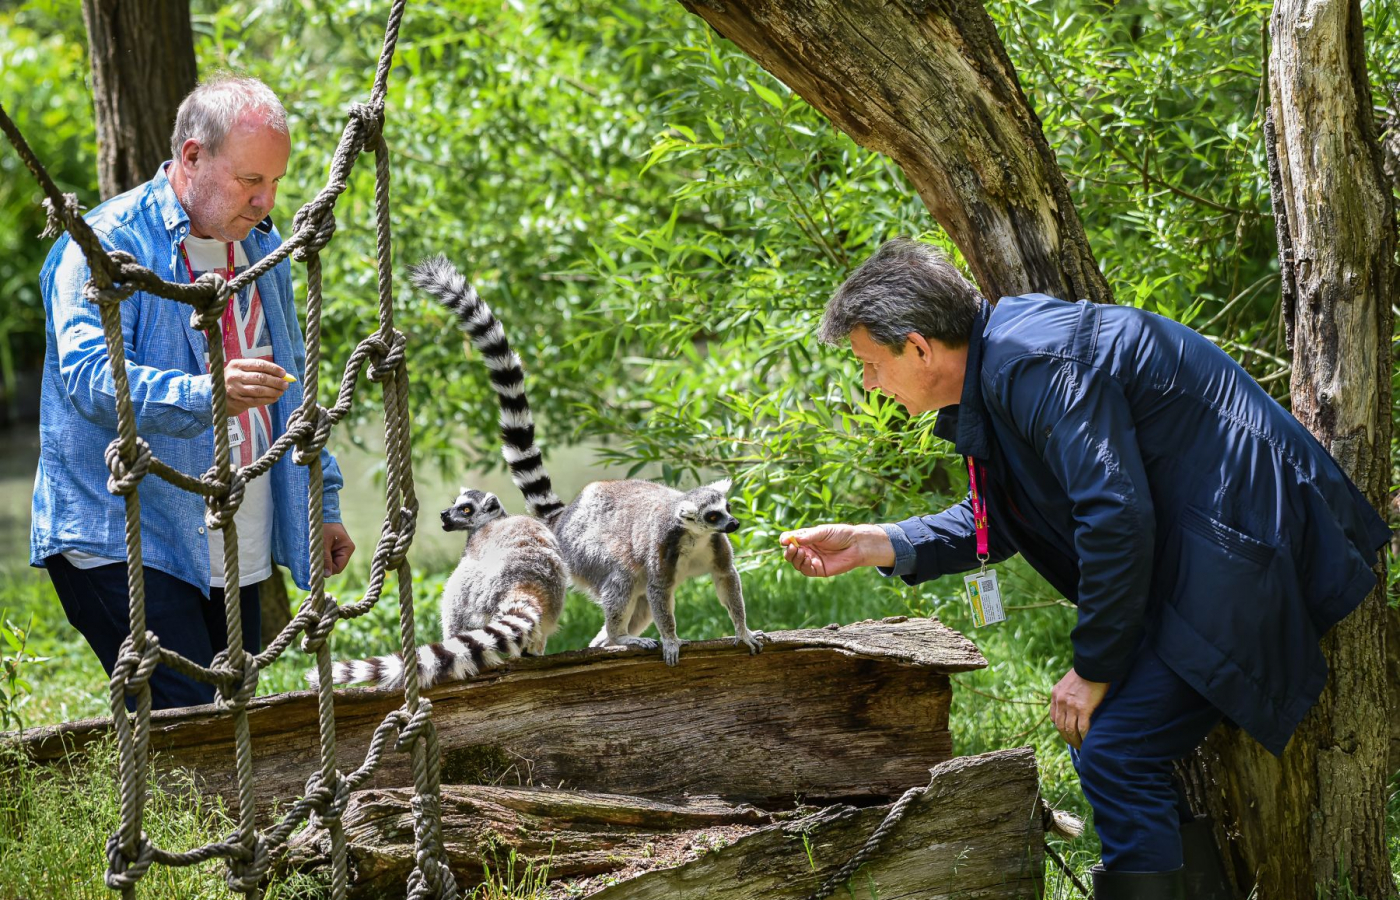 Mláďata lemurů kata mají slavné kmotry